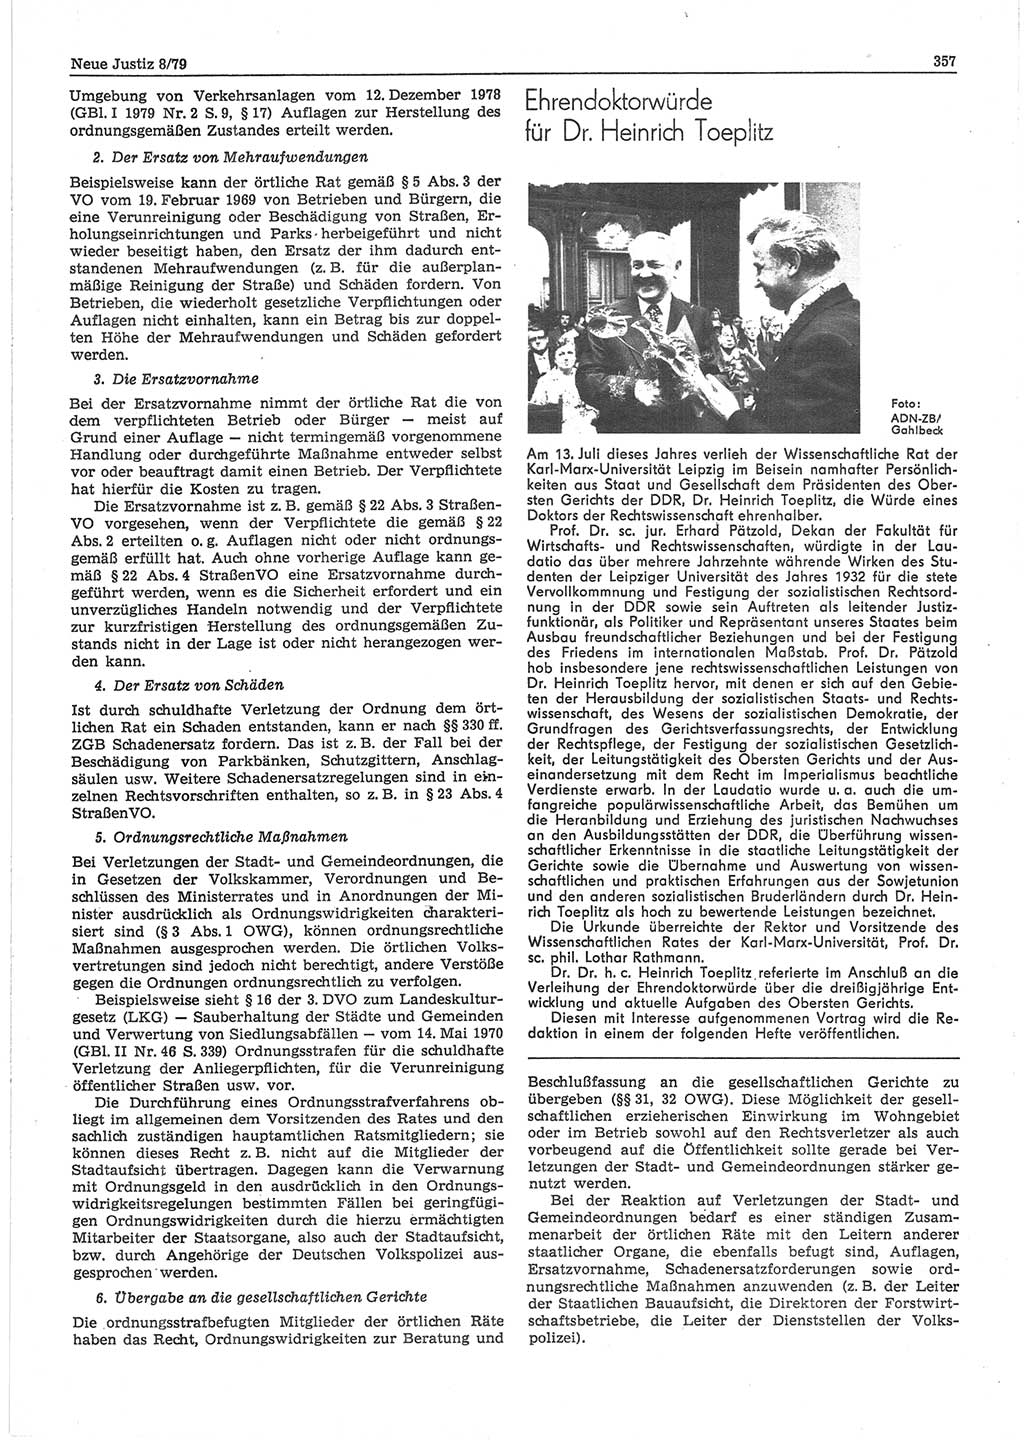 Neue Justiz (NJ), Zeitschrift für sozialistisches Recht und Gesetzlichkeit [Deutsche Demokratische Republik (DDR)], 33. Jahrgang 1979, Seite 357 (NJ DDR 1979, S. 357)